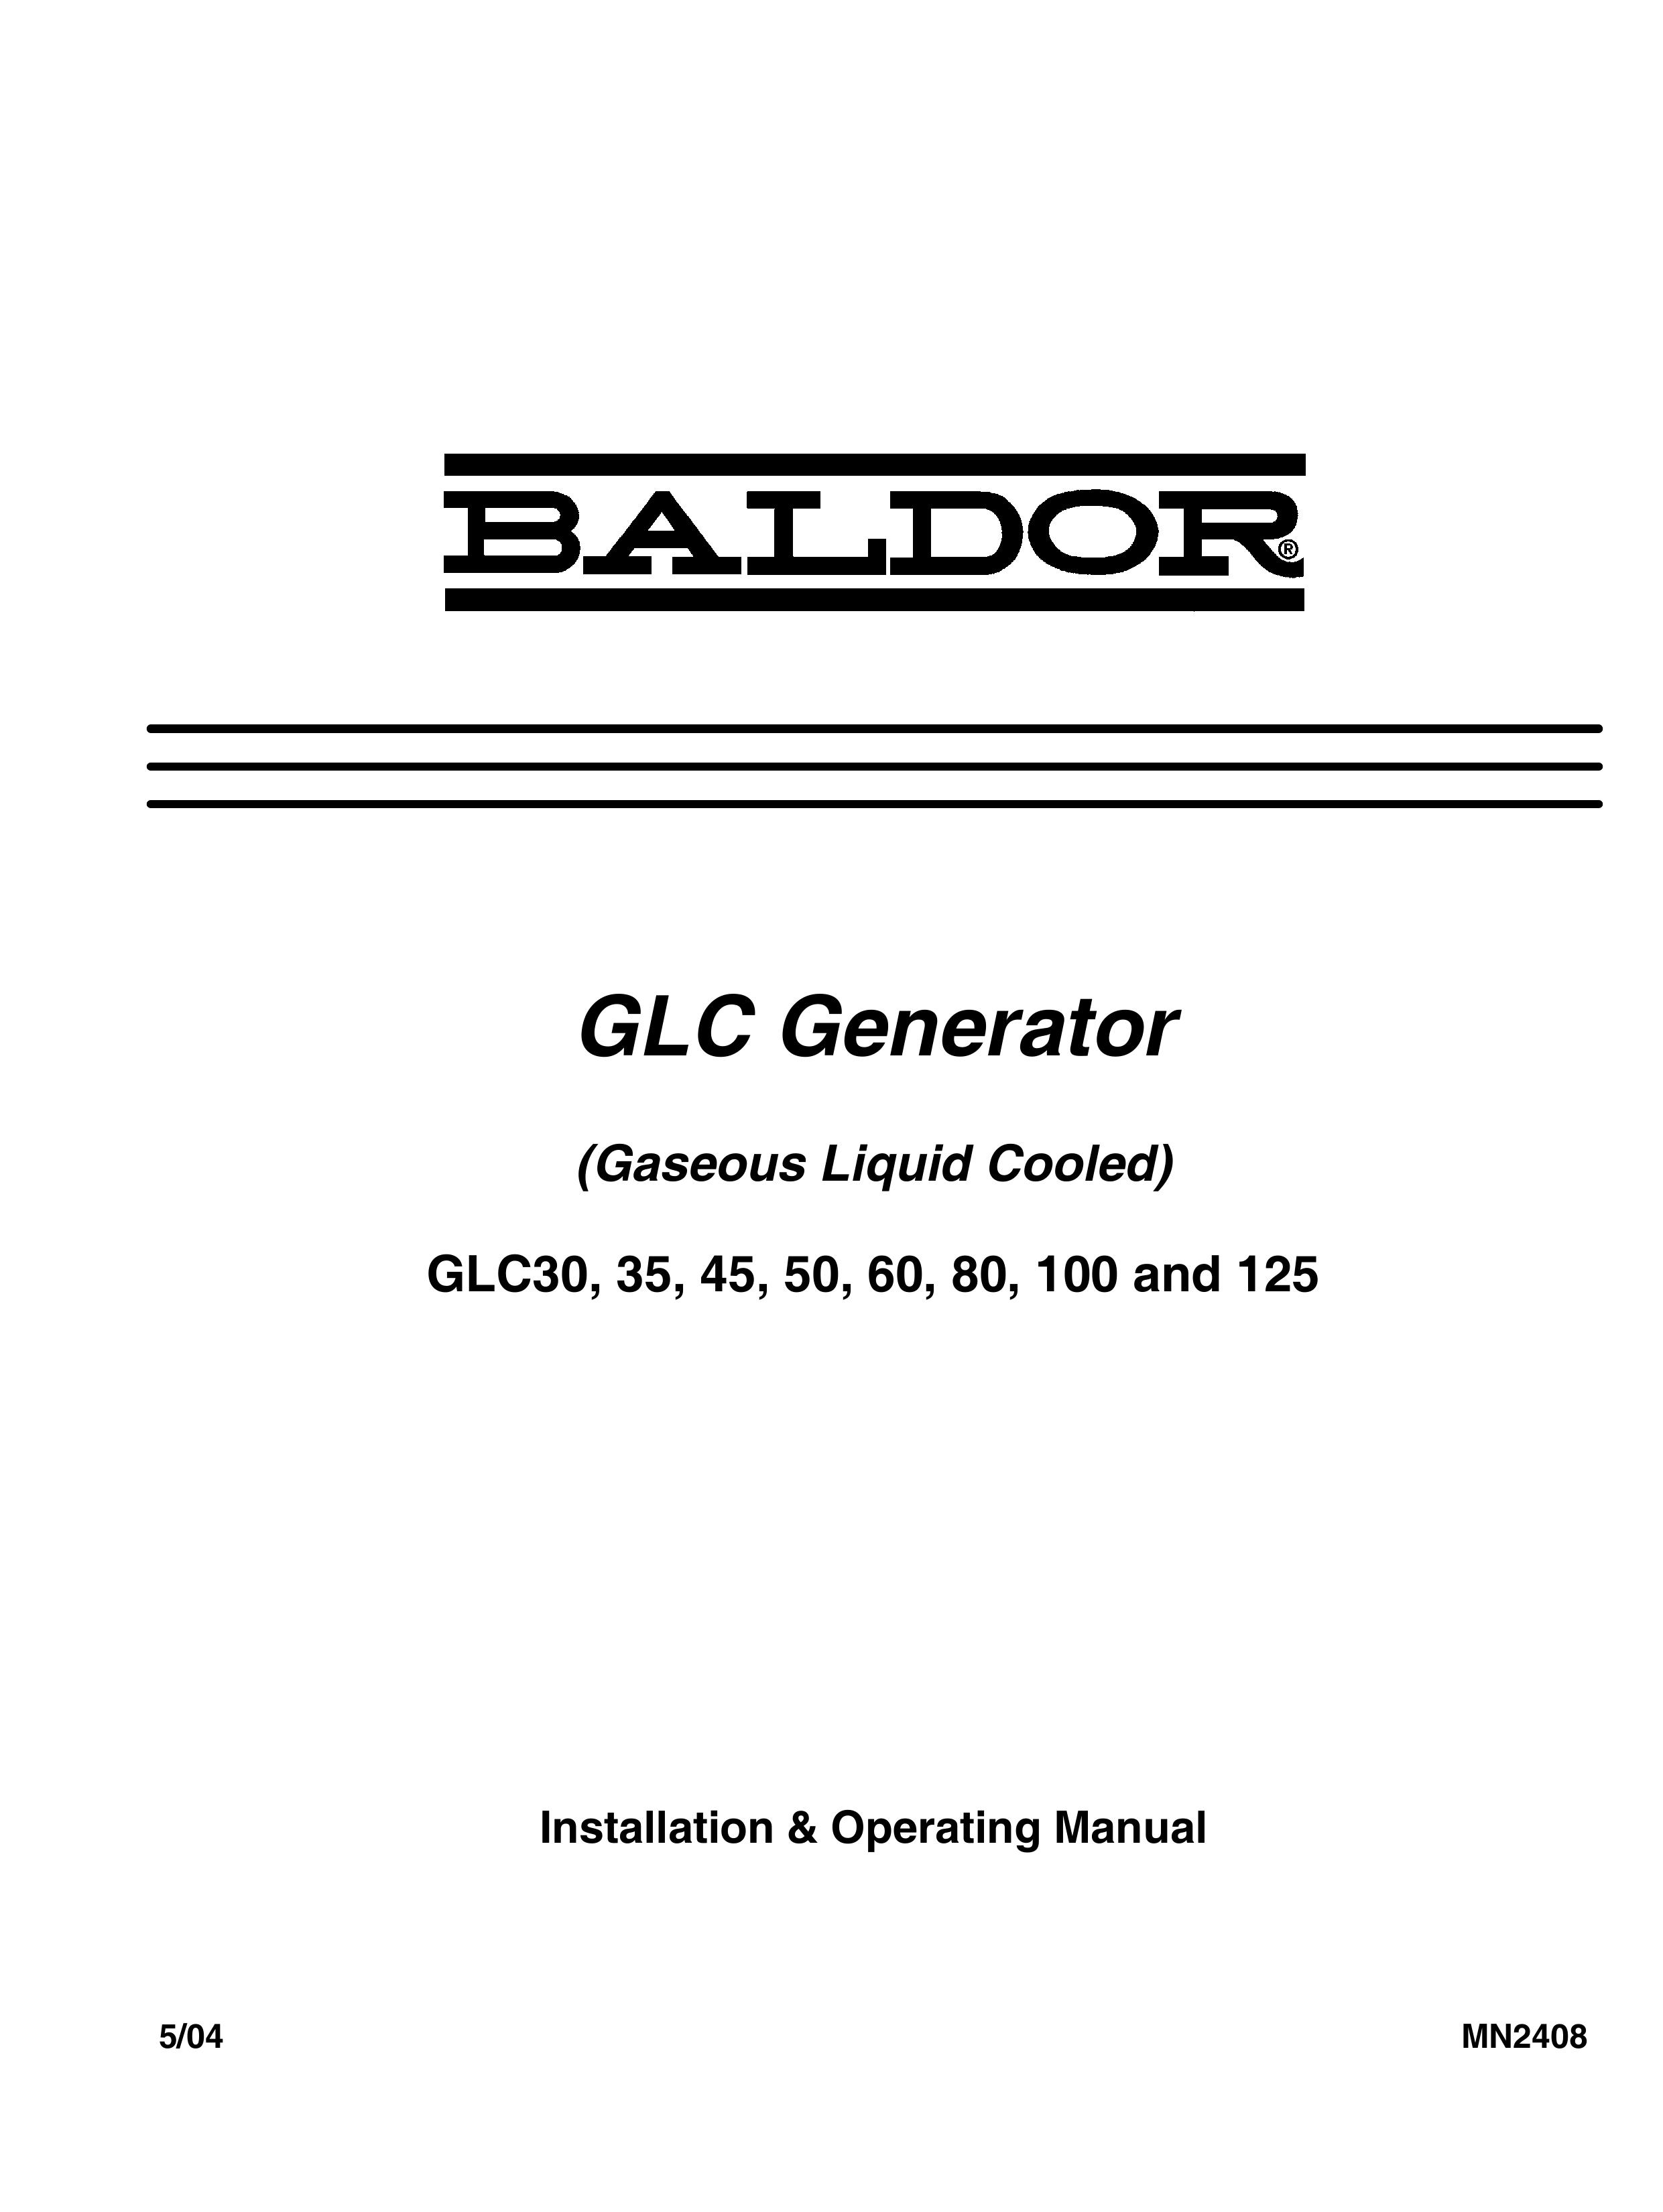 Baldor GLC45 Portable Generator User Manual